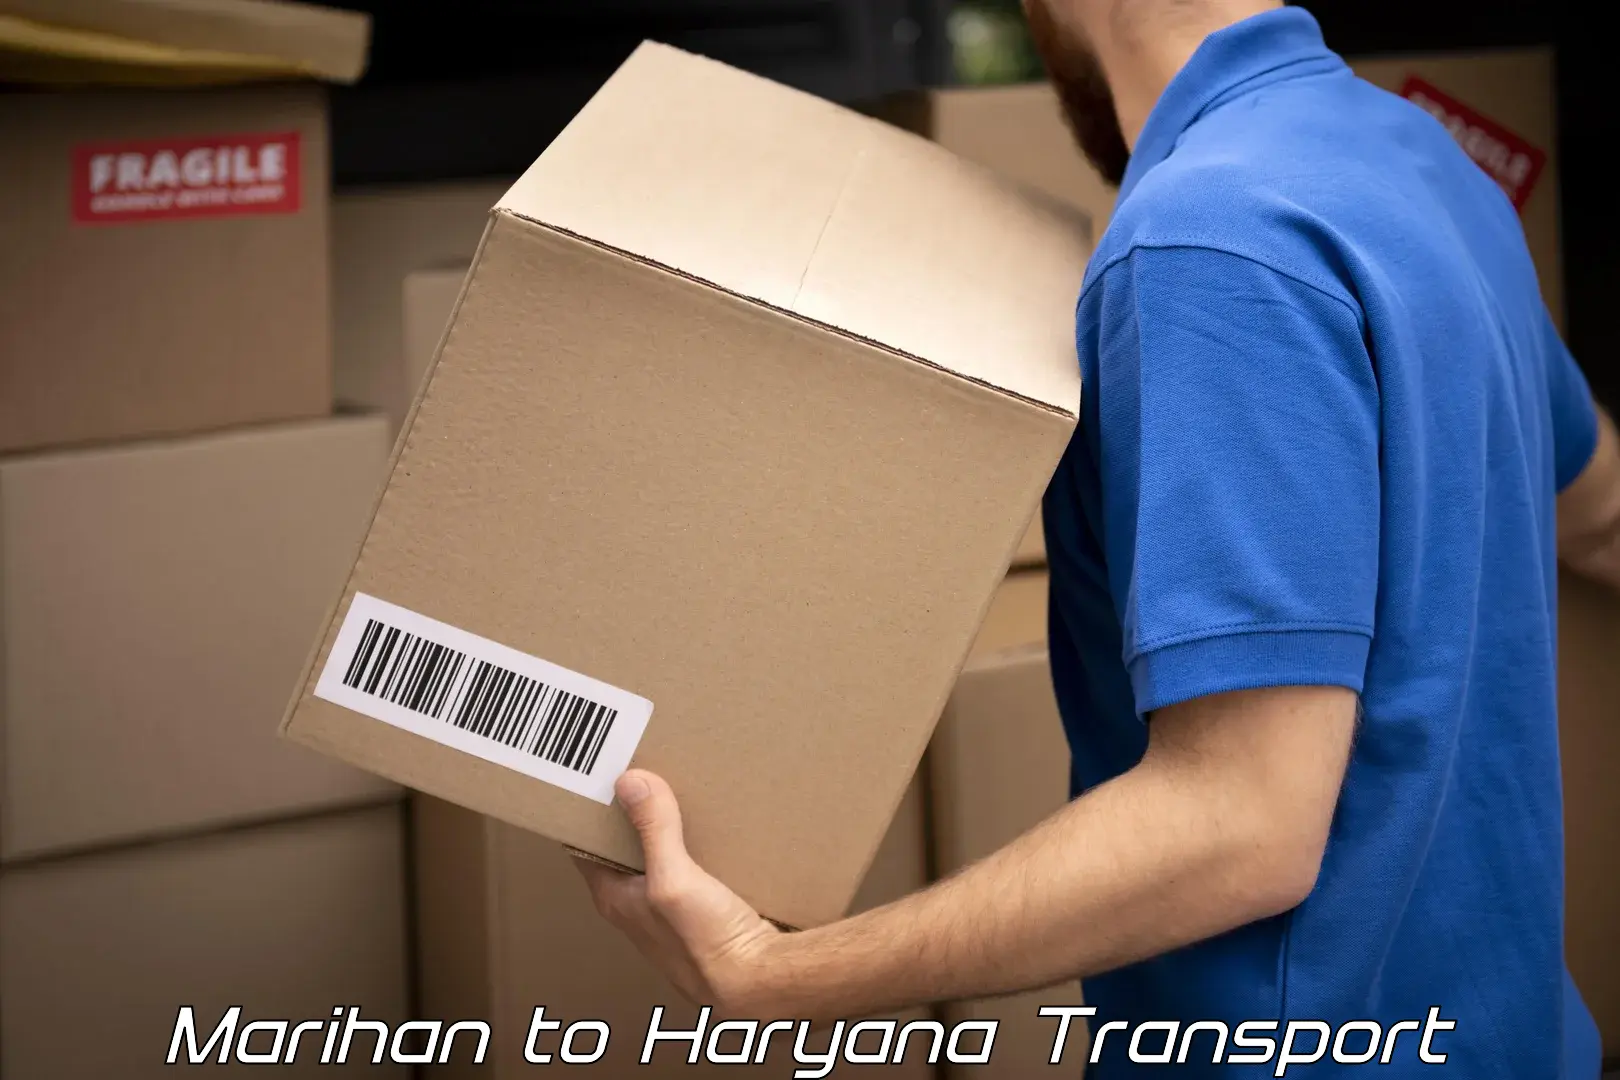 Transportation solution services Marihan to Chaudhary Charan Singh Haryana Agricultural University Hisar